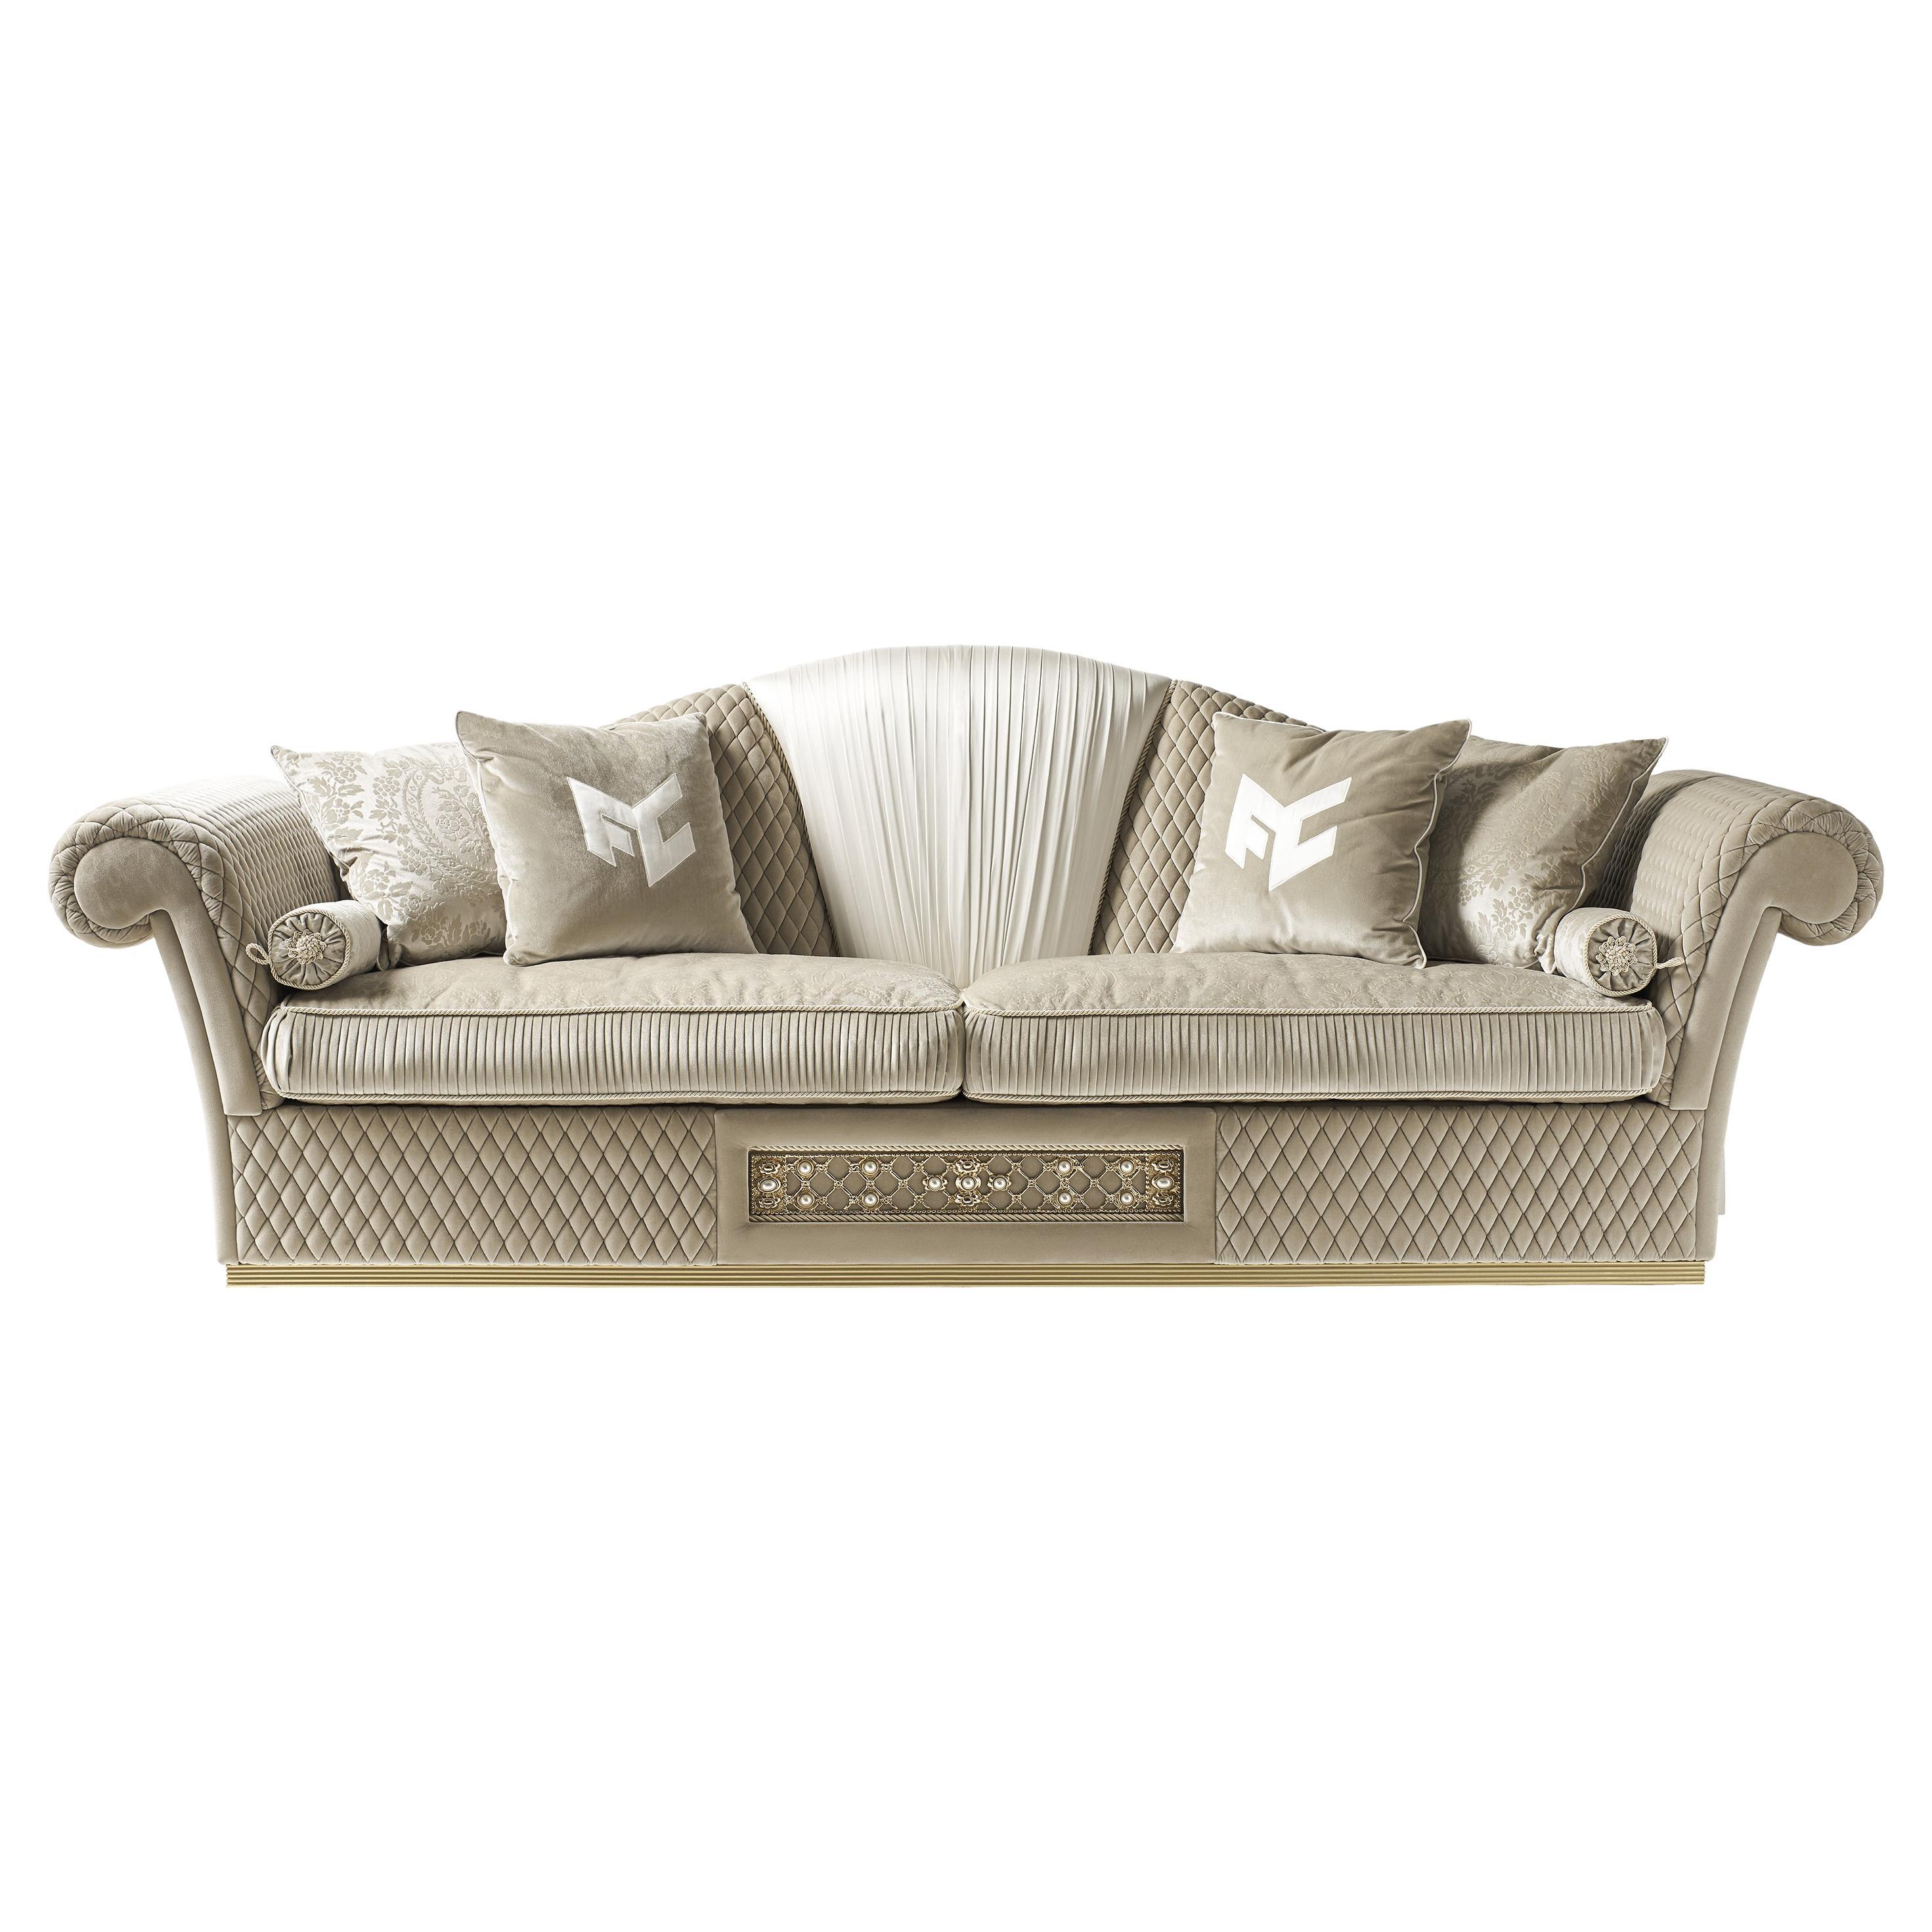 Canapé néo-classique de luxe avec tissu matelassé et décoration Mod.EL073